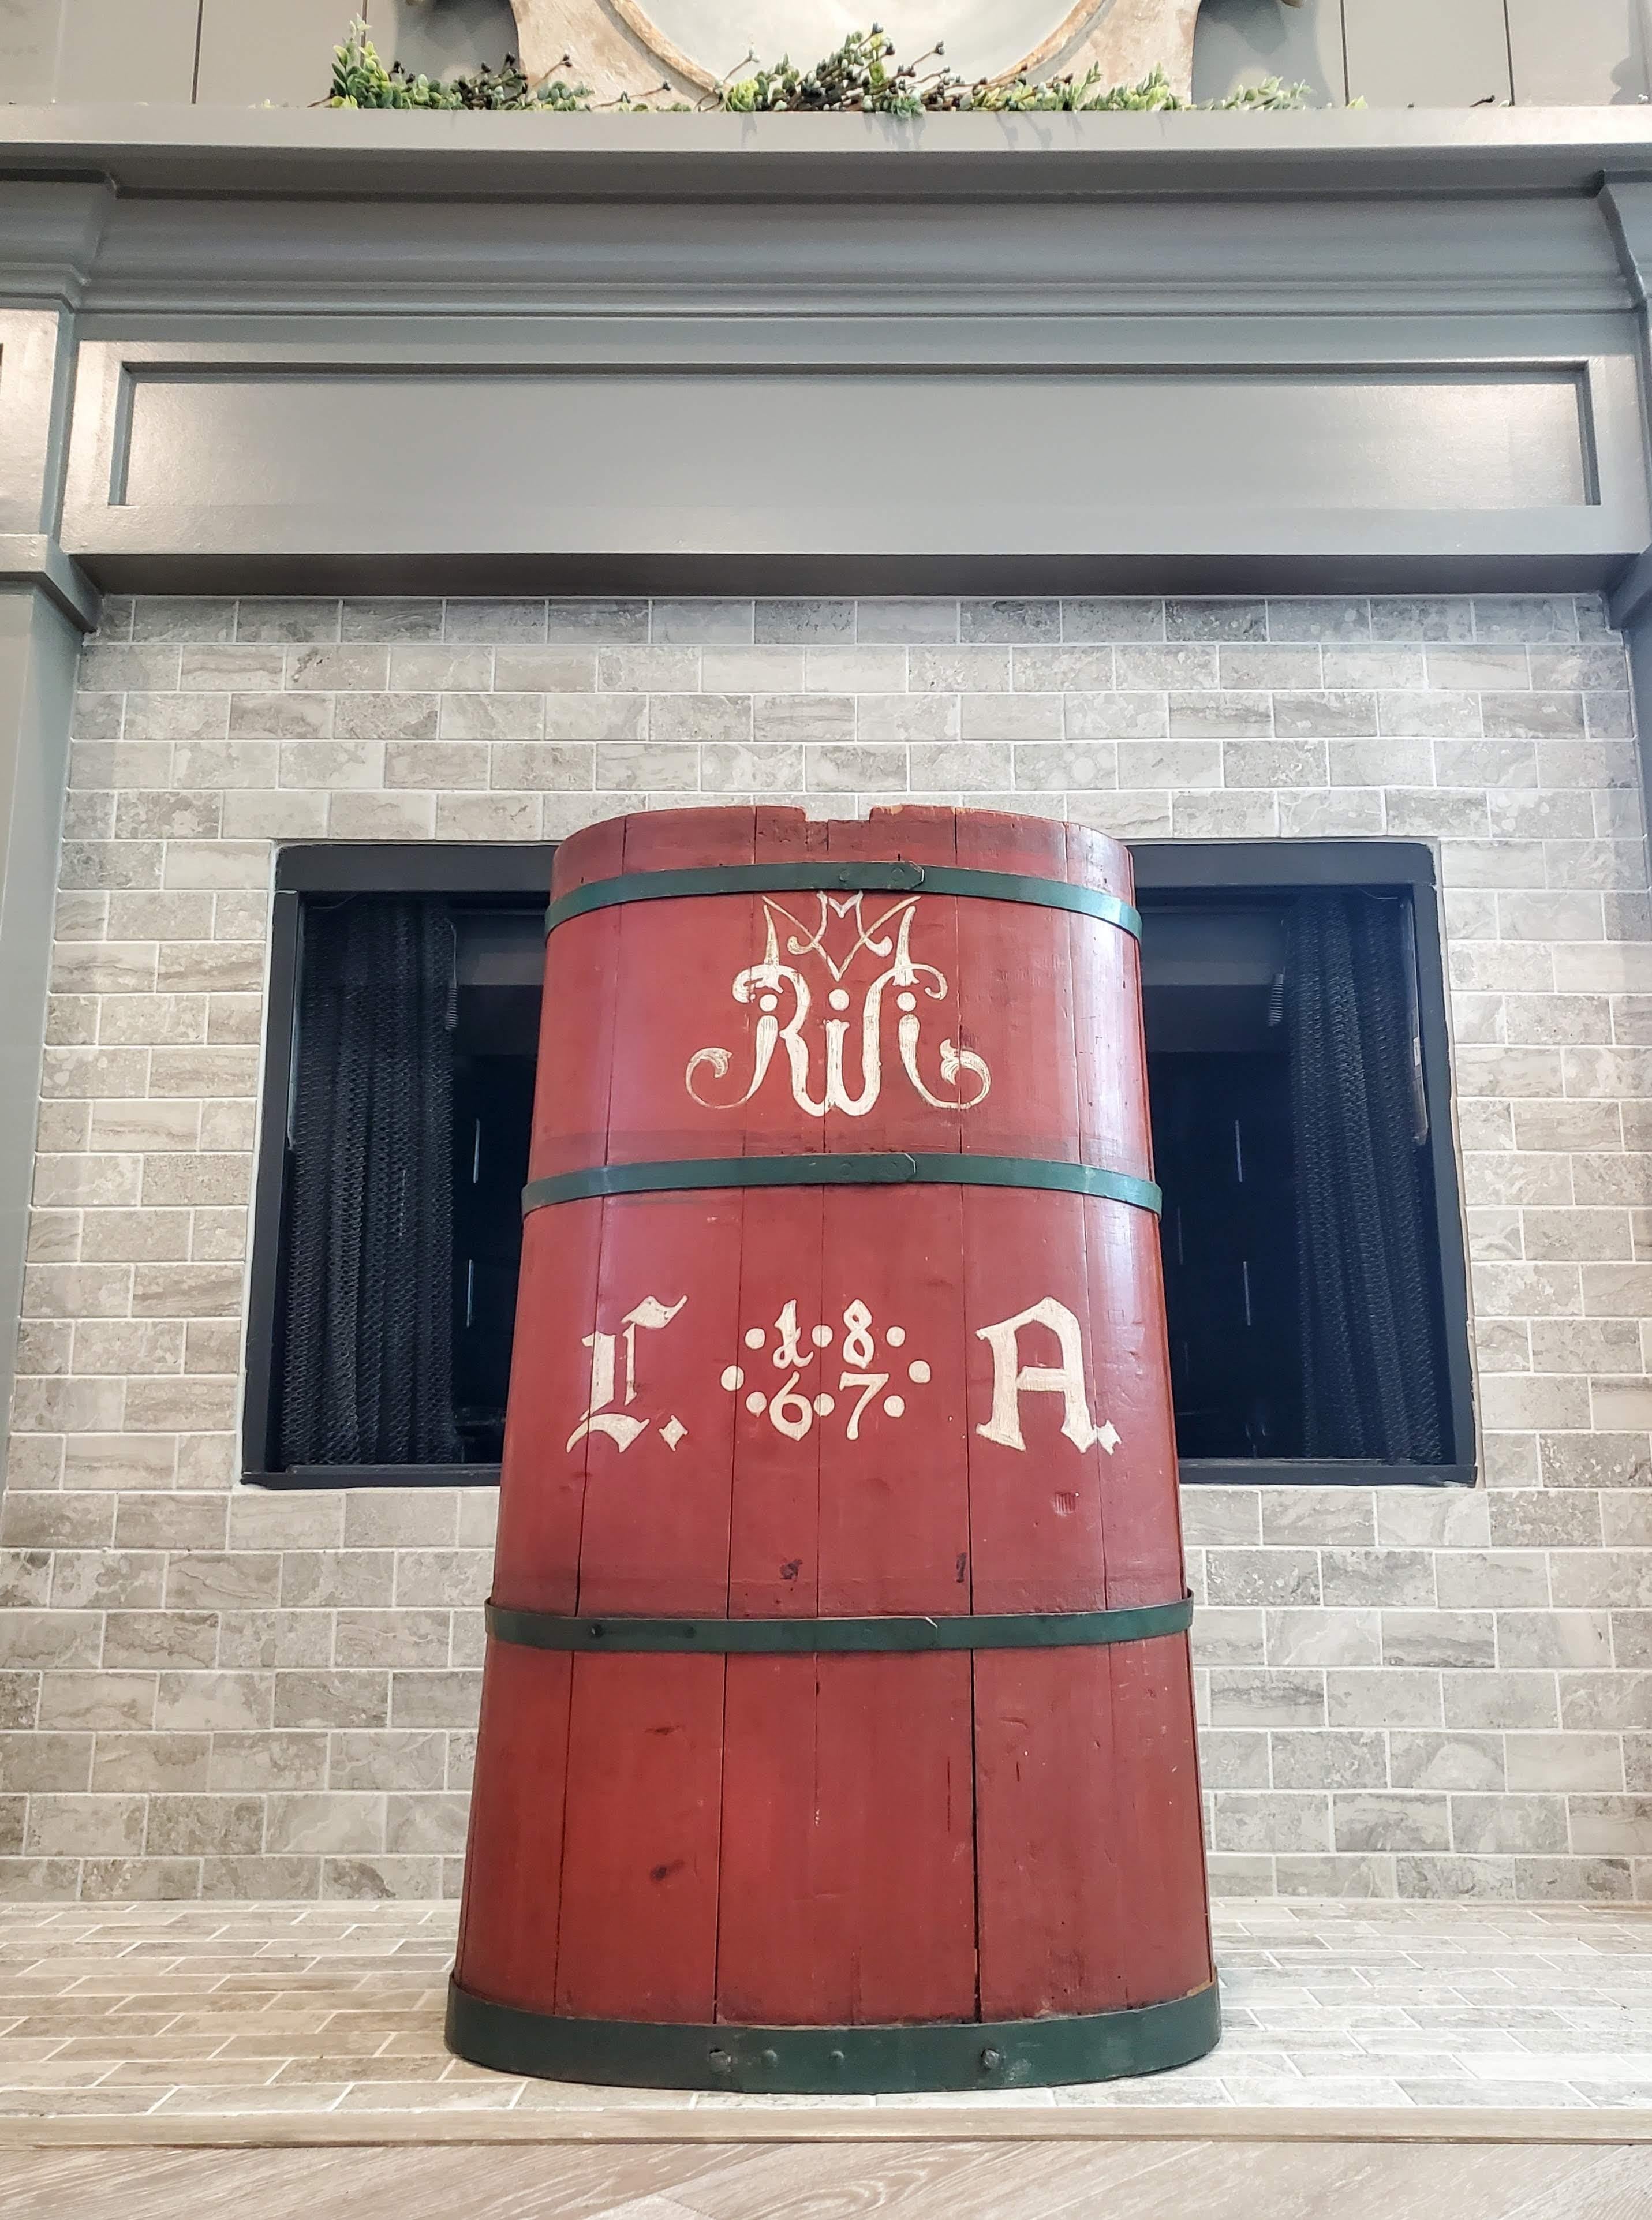 Eine charmante antike Französisch Land Traube Pflücker Hotte / hod. 

Dieser große Holzkorb wurde in der Mitte des 19. Jahrhunderts in der französischen Provinz handgefertigt und war Teil der traditionellen Weinherstellung. Er wurde früher auf dem